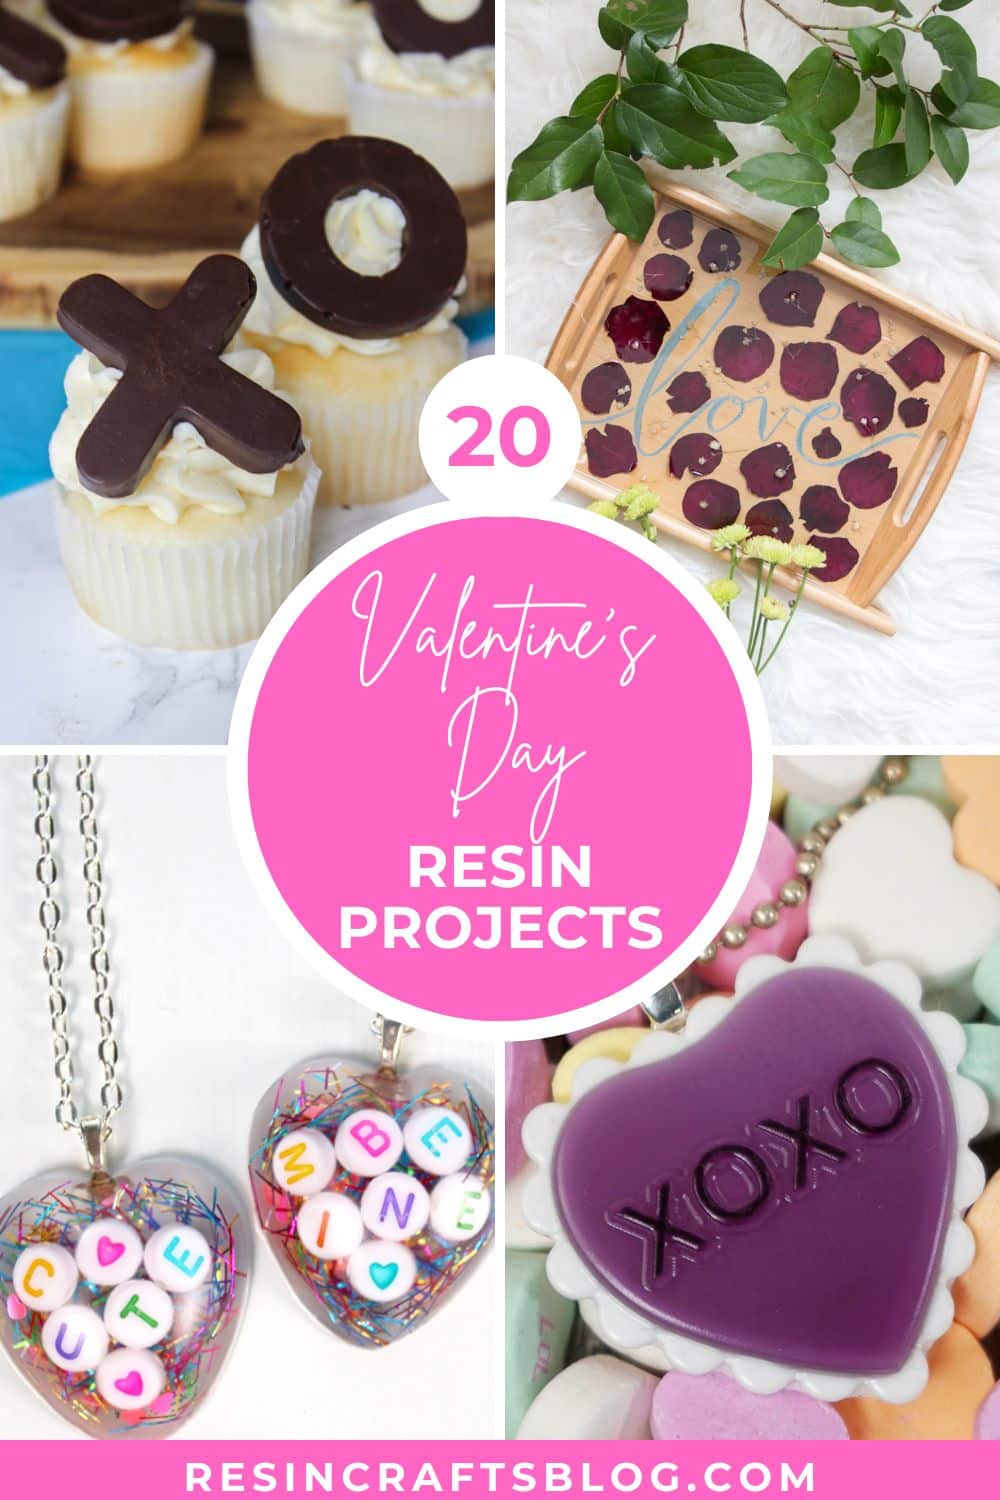 10 DIY Valentine's Day Gift Ideas #ValentinesDayGifts #DIYValentinesDayGiftIdeas #DIYGifts via @resincraftsblog